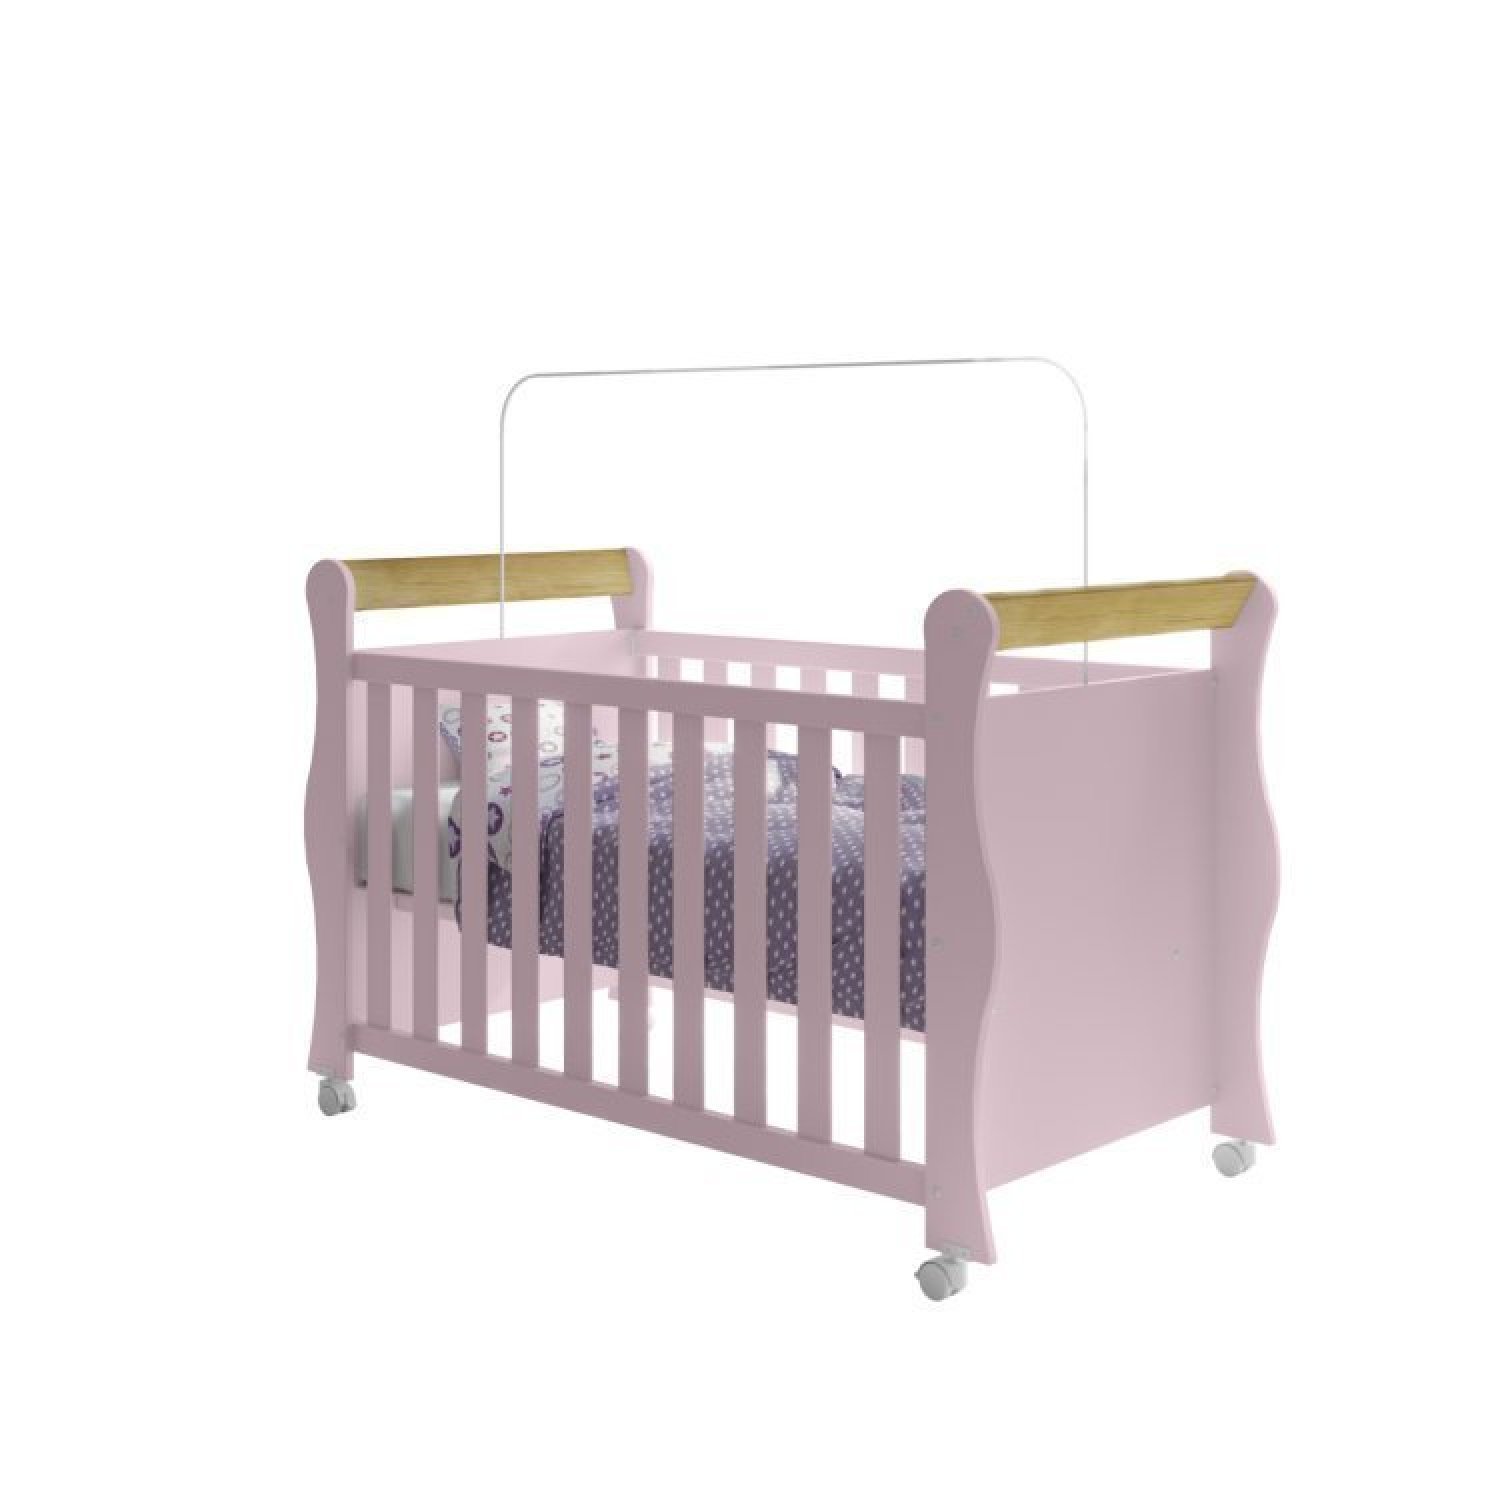 Quarto de Bebê Completo Berço 3 em 1 Cômoda 1 Porta Guarda Roupa 3 Portas Údine Retrô Móveis Bonatto - 2